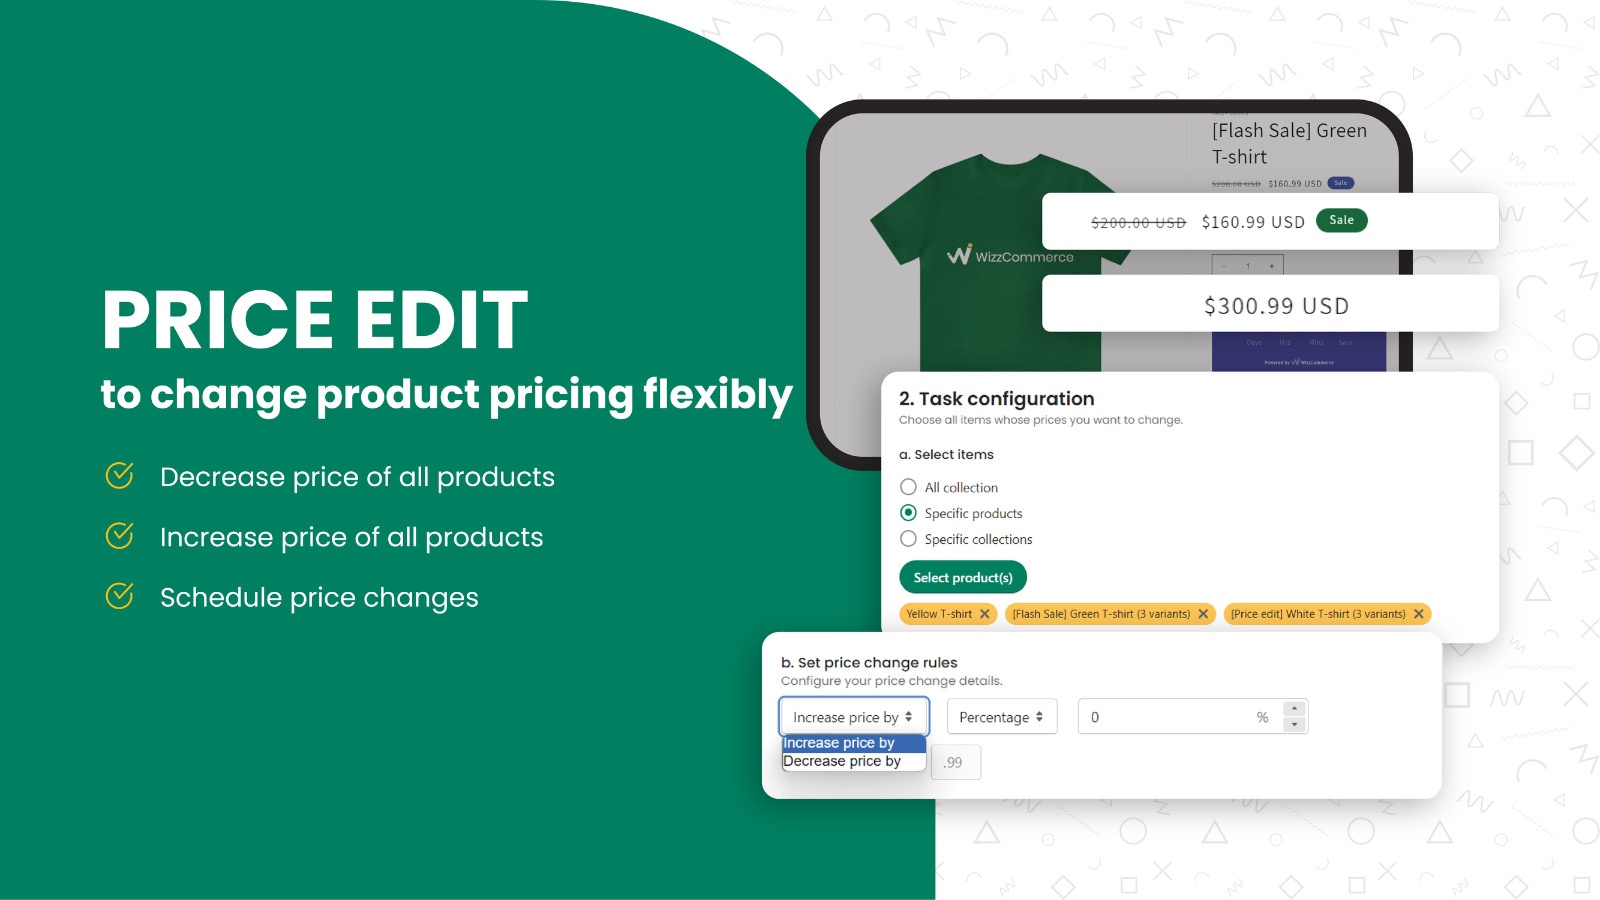 Altere a precificação de produtos de forma flexível com configuração de edição de preço